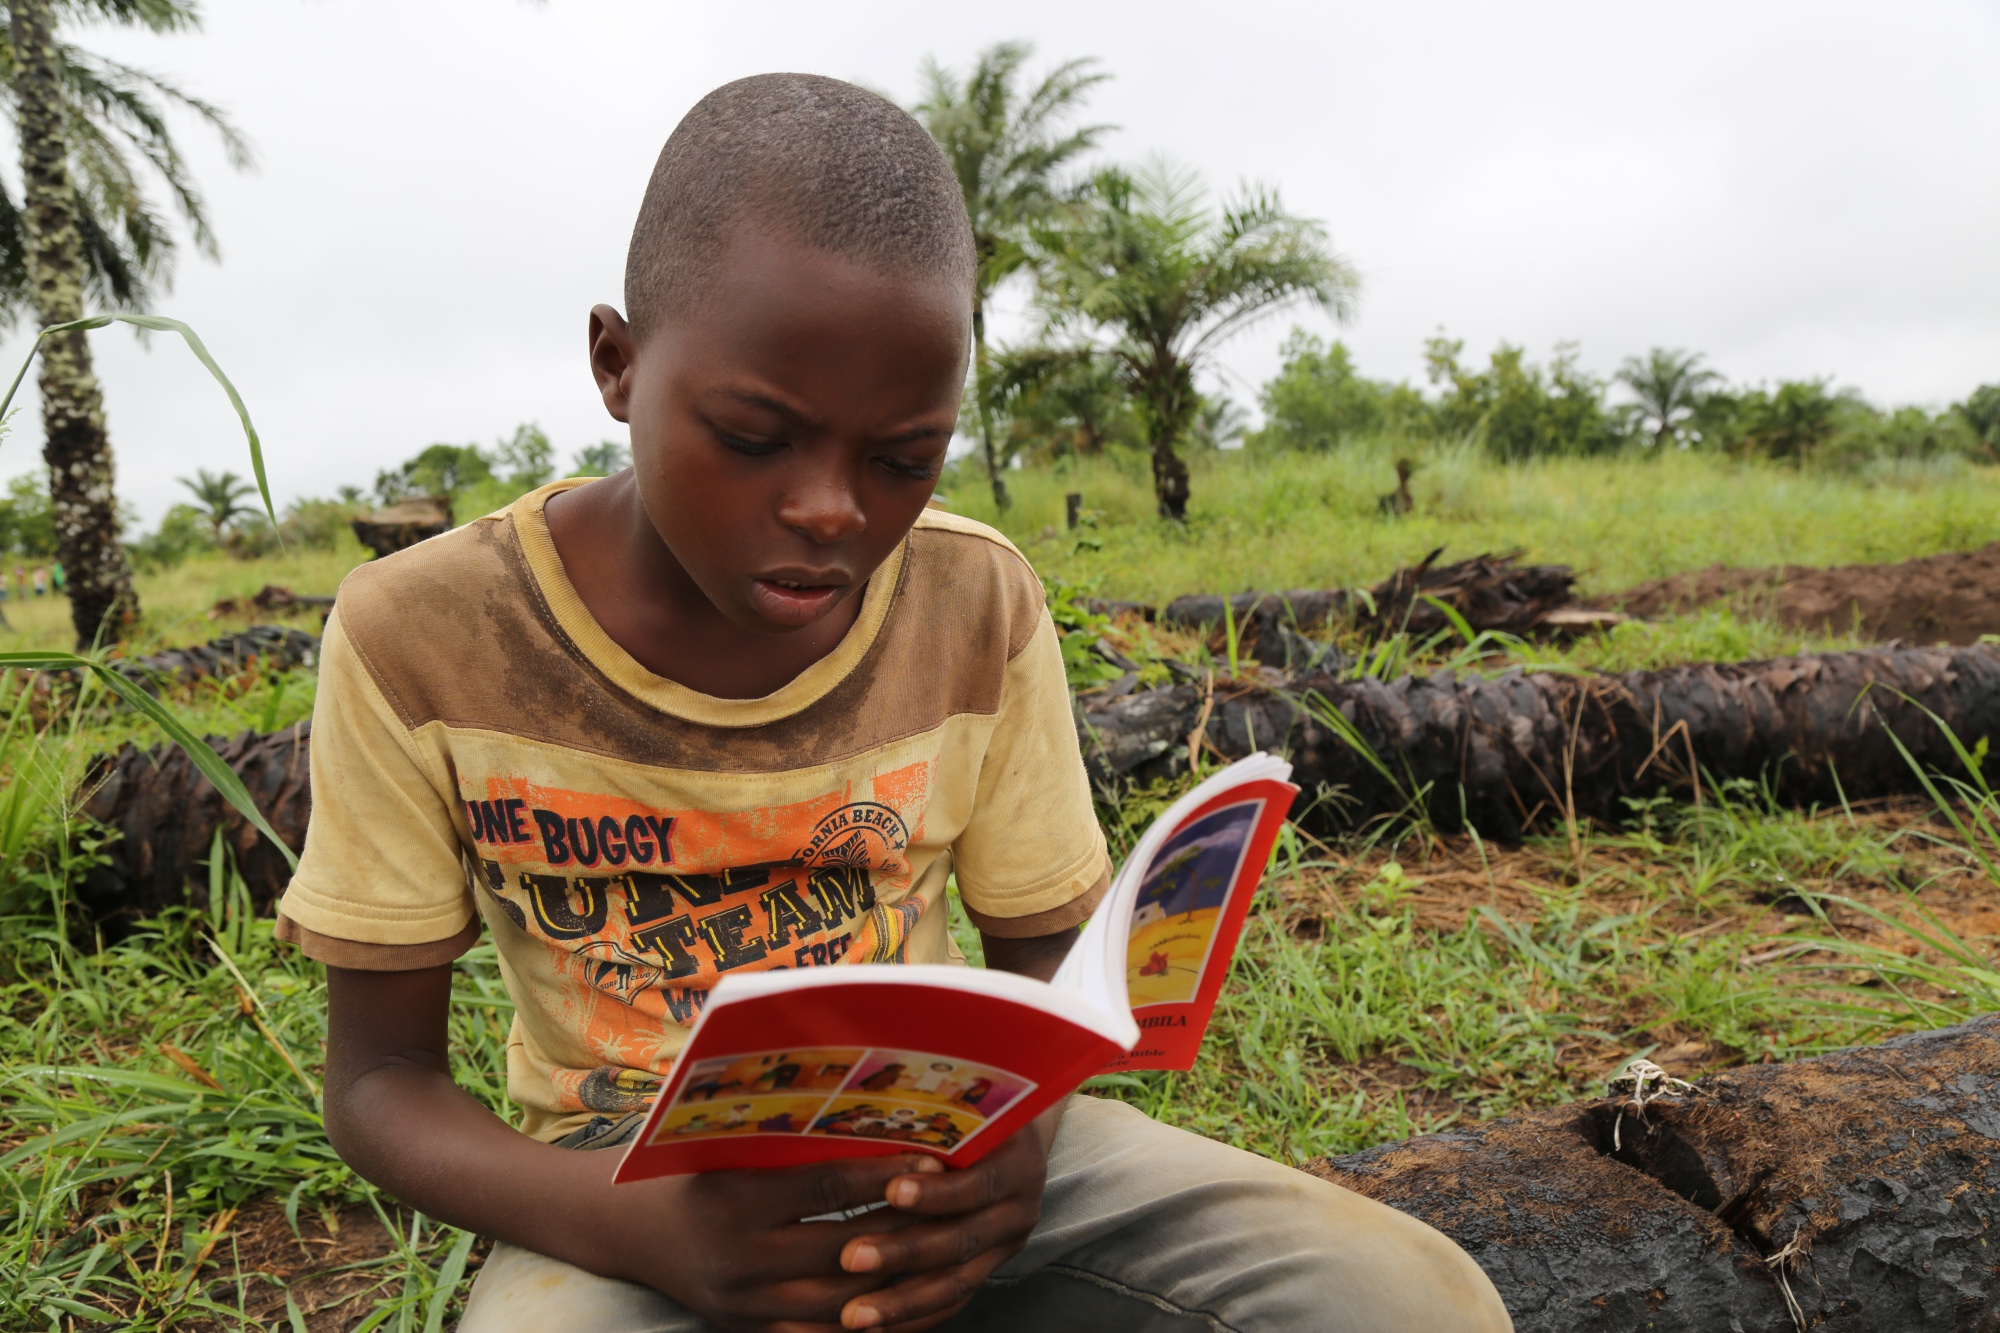 Ndibu, is a 13-year-old boy from Kasai, Democratic Republic of Congo, is reading a book. Ndibu wants to be an English teacher when he grows up.